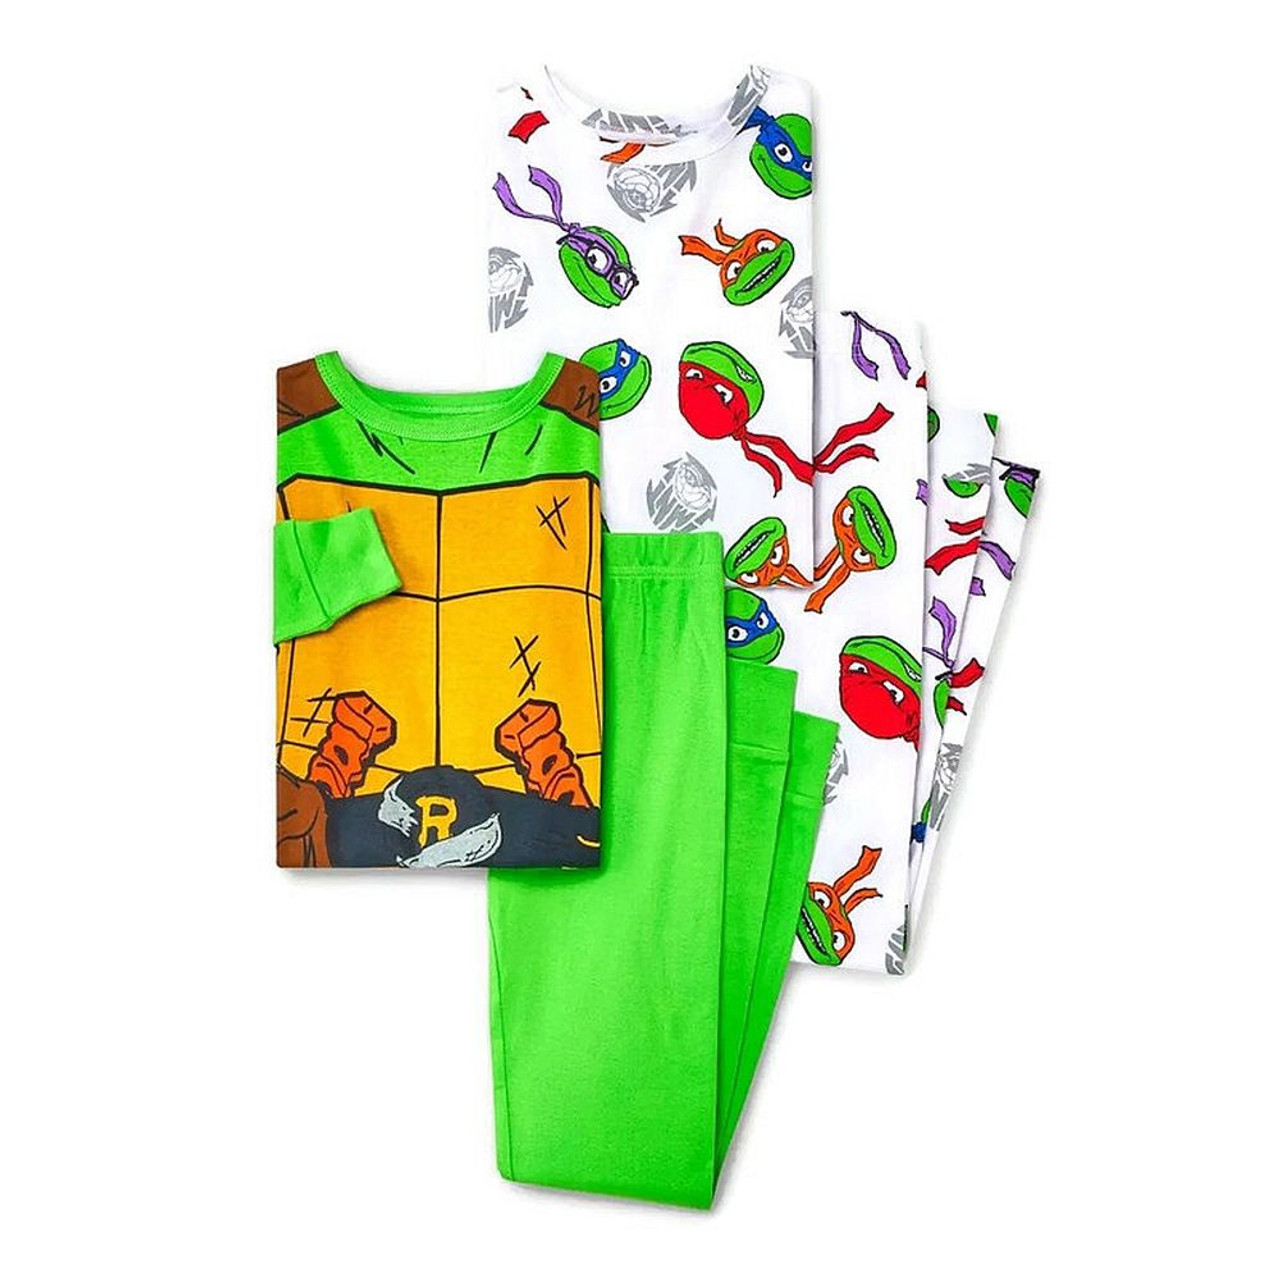 Nickelodeon Teenage Mutant Ninja Turtle 3 PC Bath Robe Pajama Set